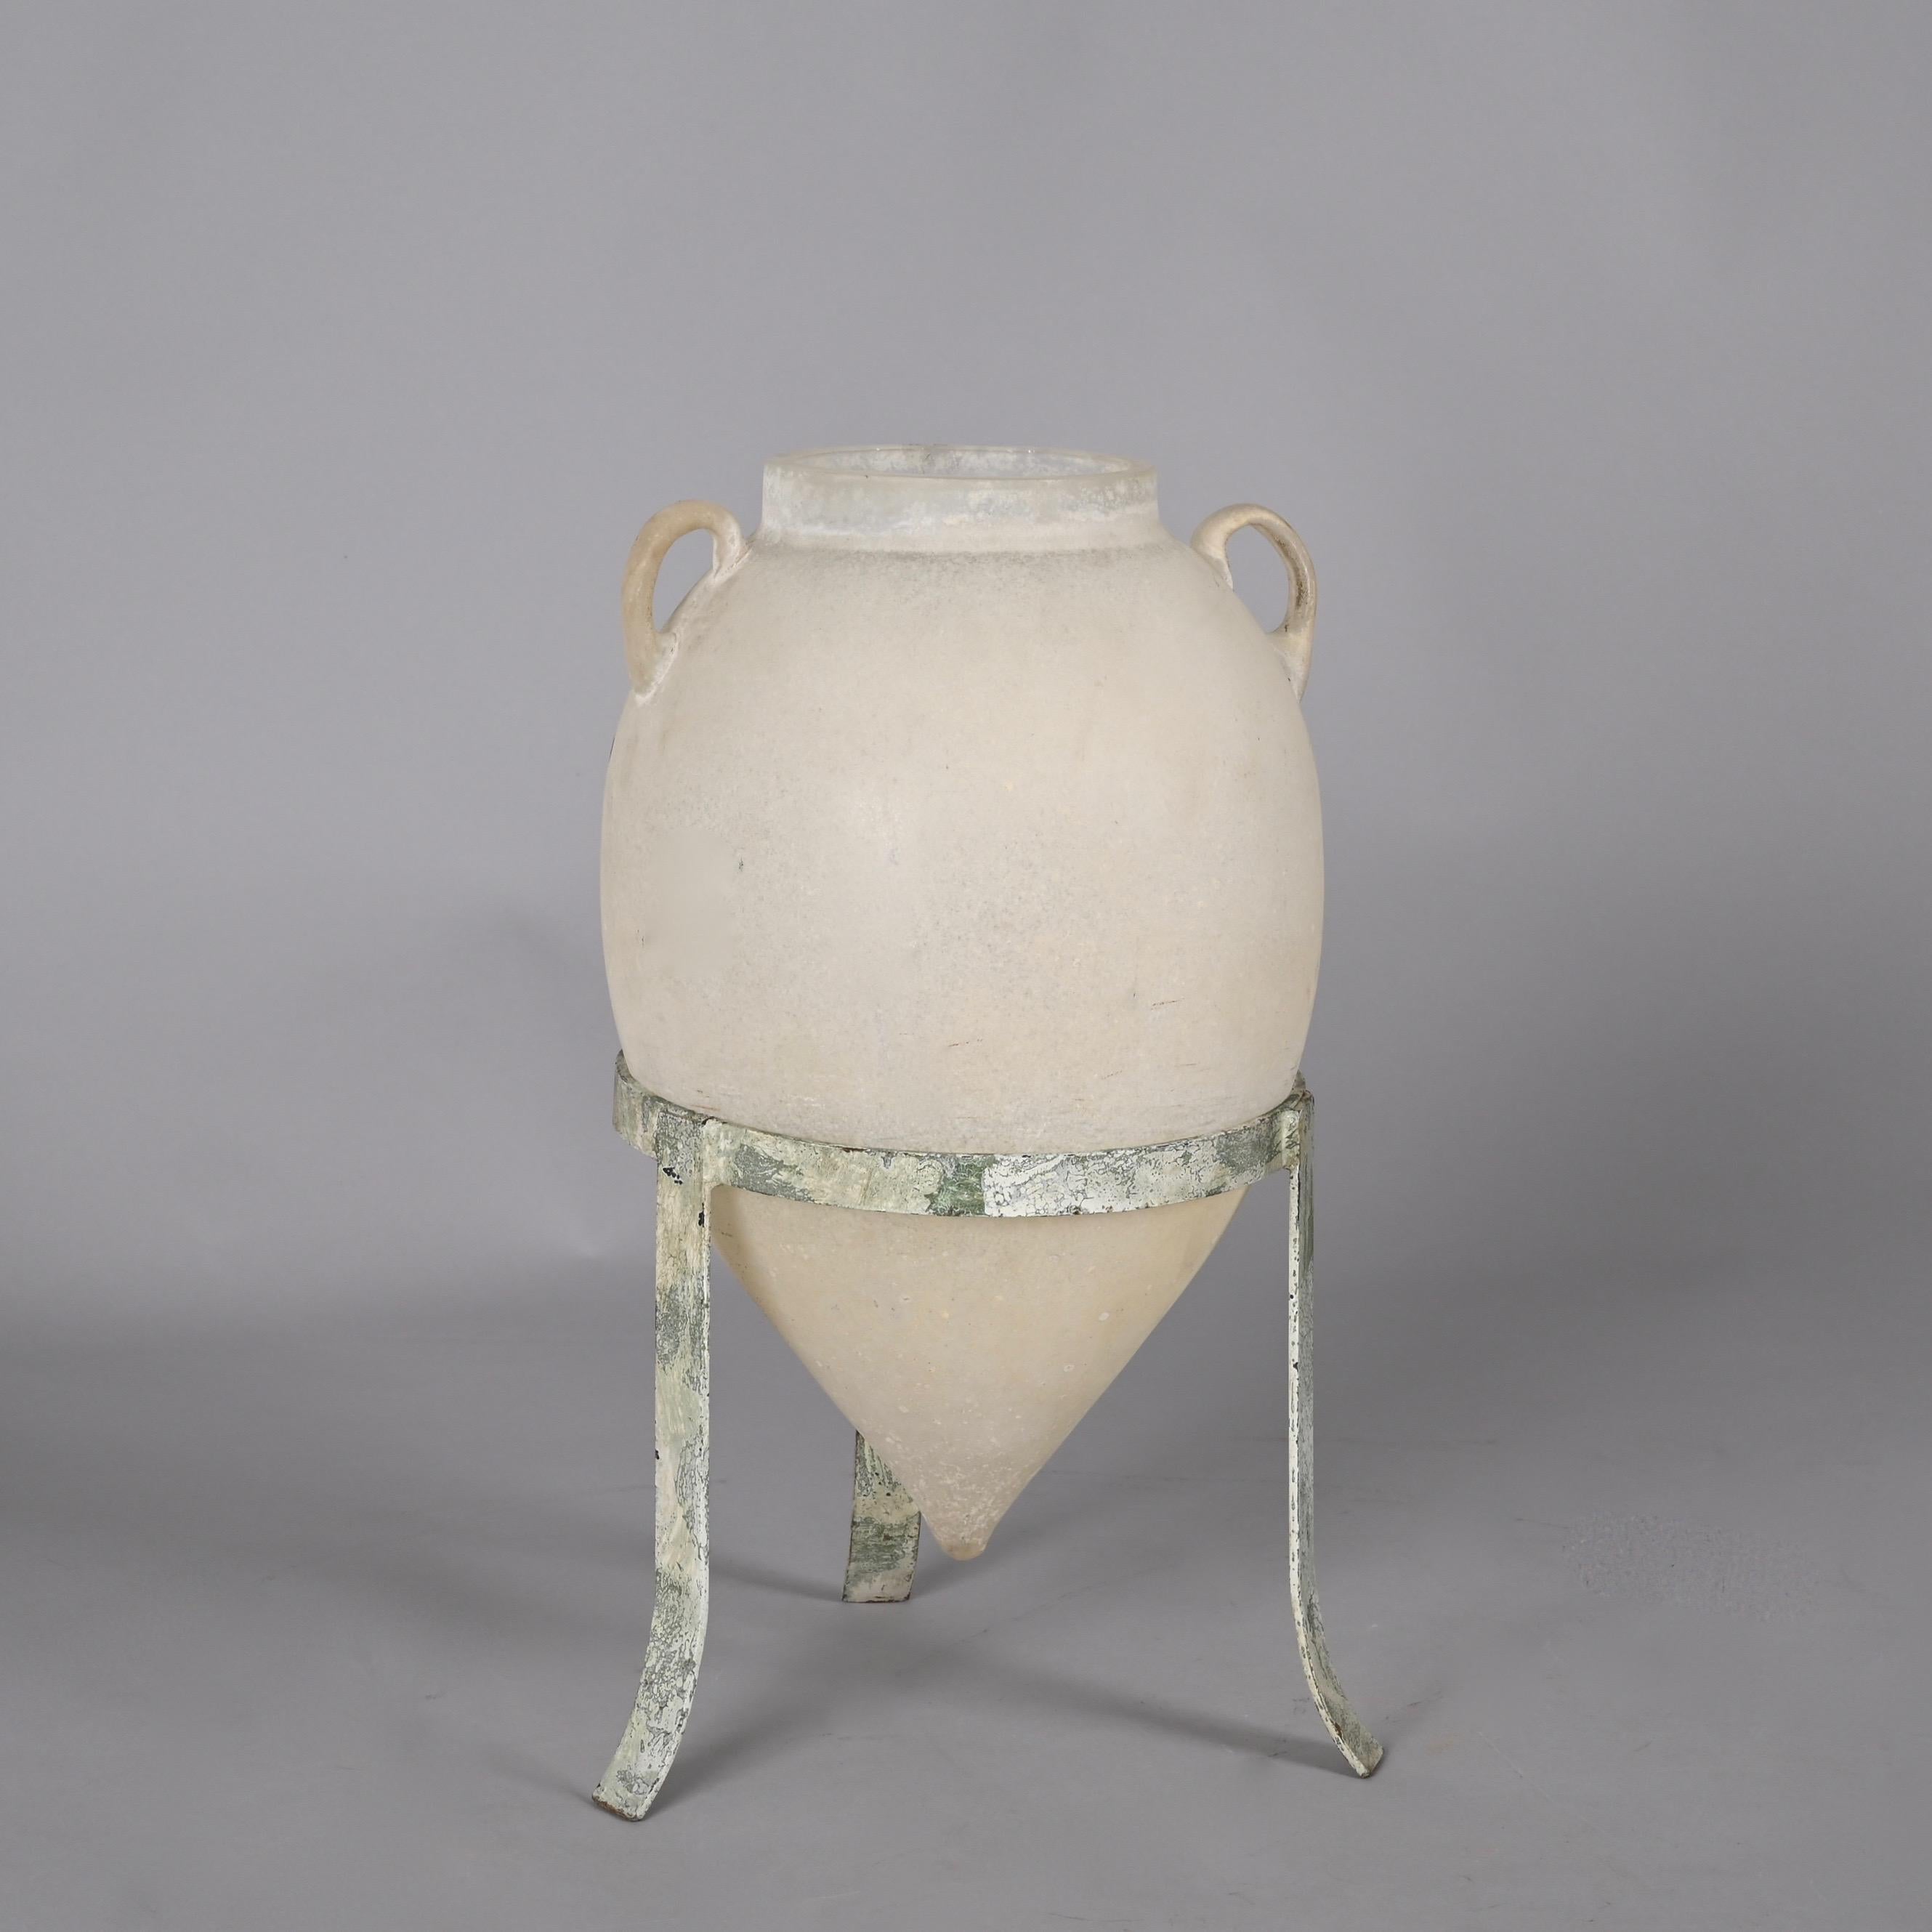 Erstaunlich Seguso Vetri d'Arte weiß Murano Glas behandelt Vase. Dieses Stück wurde mit einem atemberaubenden 